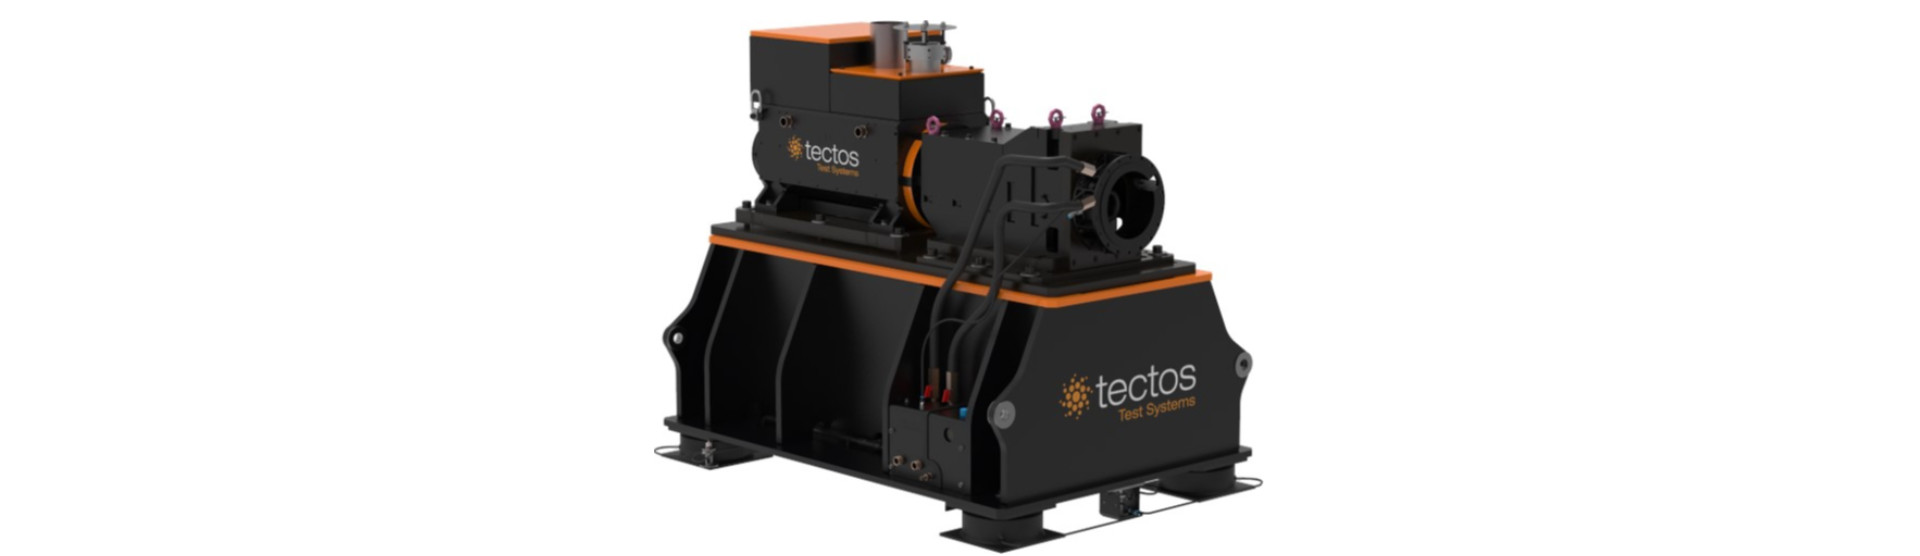 tectos GmbH